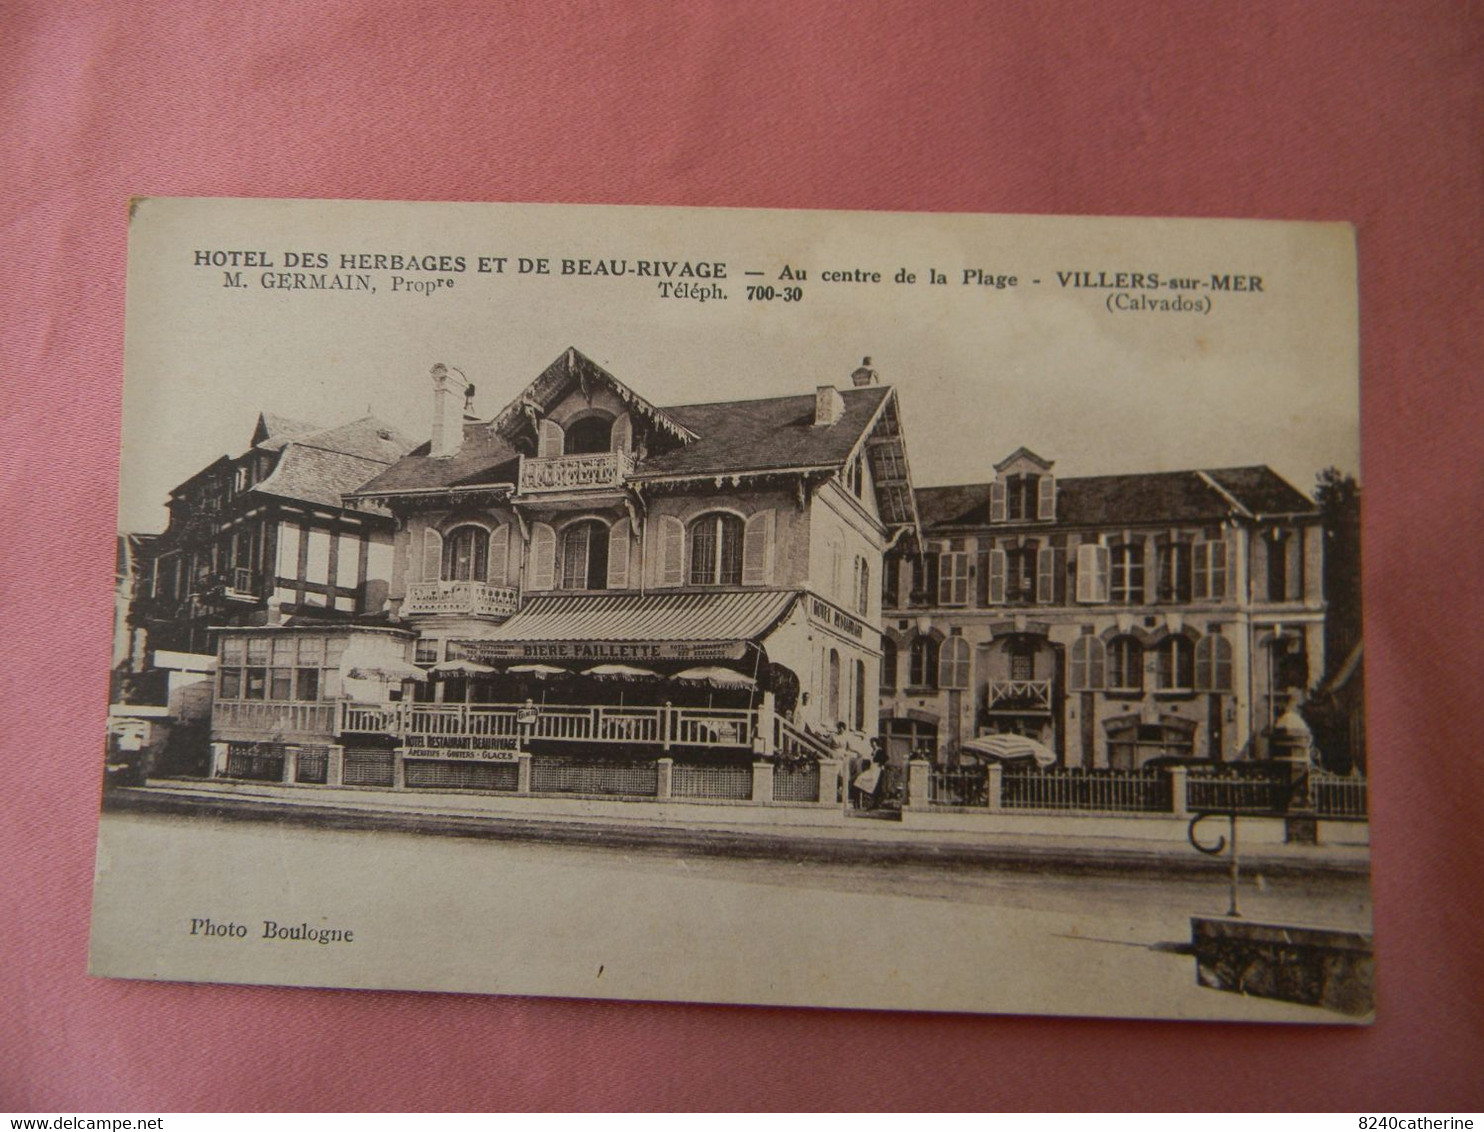 Carte Postale De VILLERS-SUR-MER. Hotel Des Herbages Et De Beau-Rivage. Au Centre De La Plage. - Villers Sur Mer